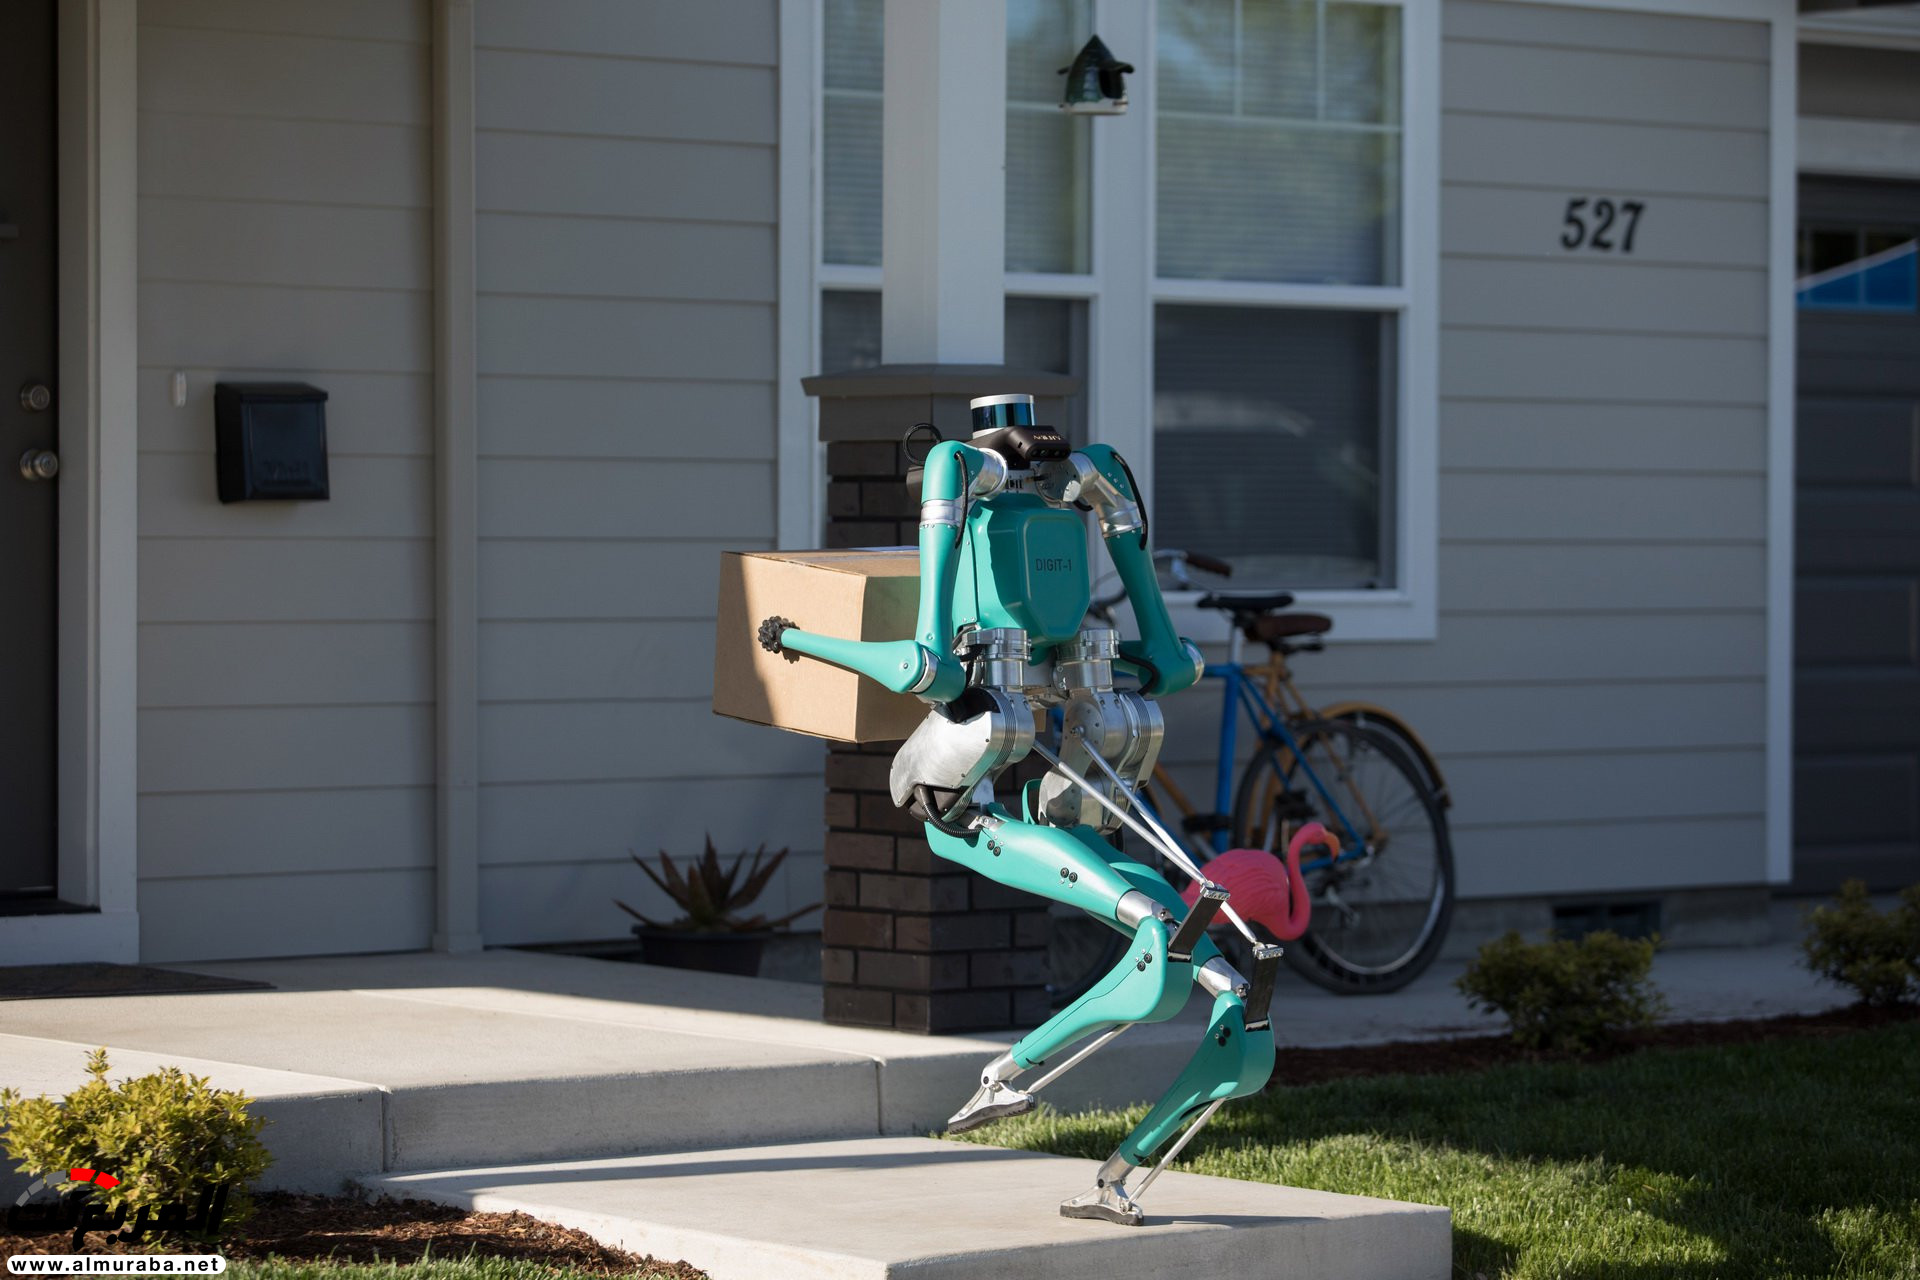 "بالفيديو والصور" فورد طورت روبوت يوصّل الطلبيات للمنازل 35